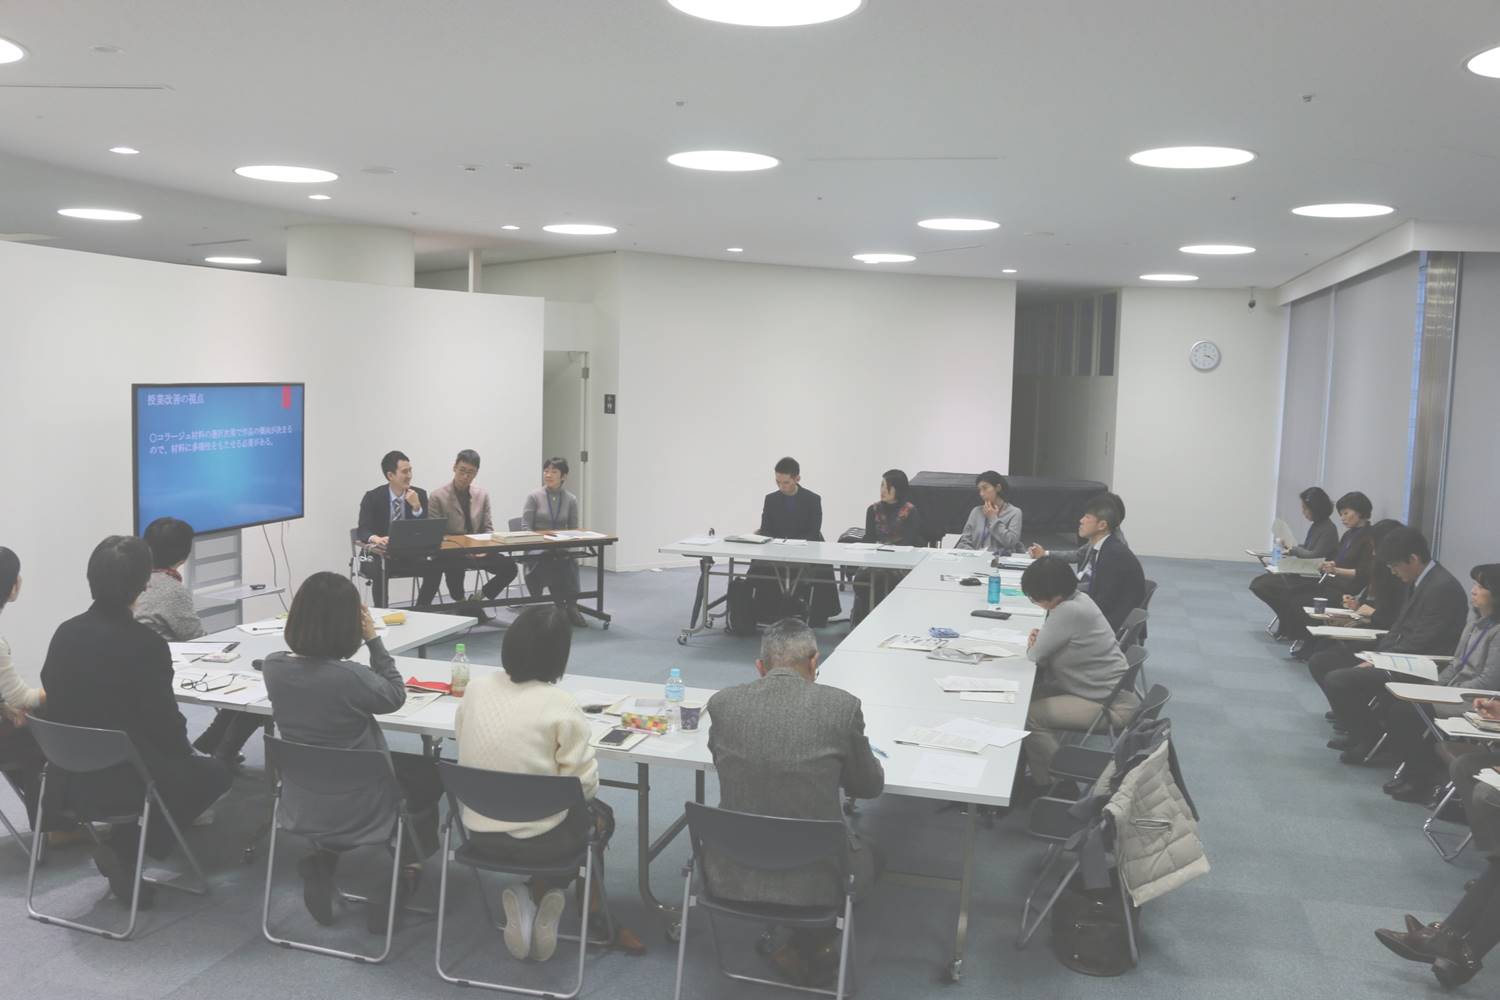 ［終了］12月11日（土）「横浜美術館コレクションを活用した授業のための中学校・美術館合同研究会 公開研究会」を開催します。